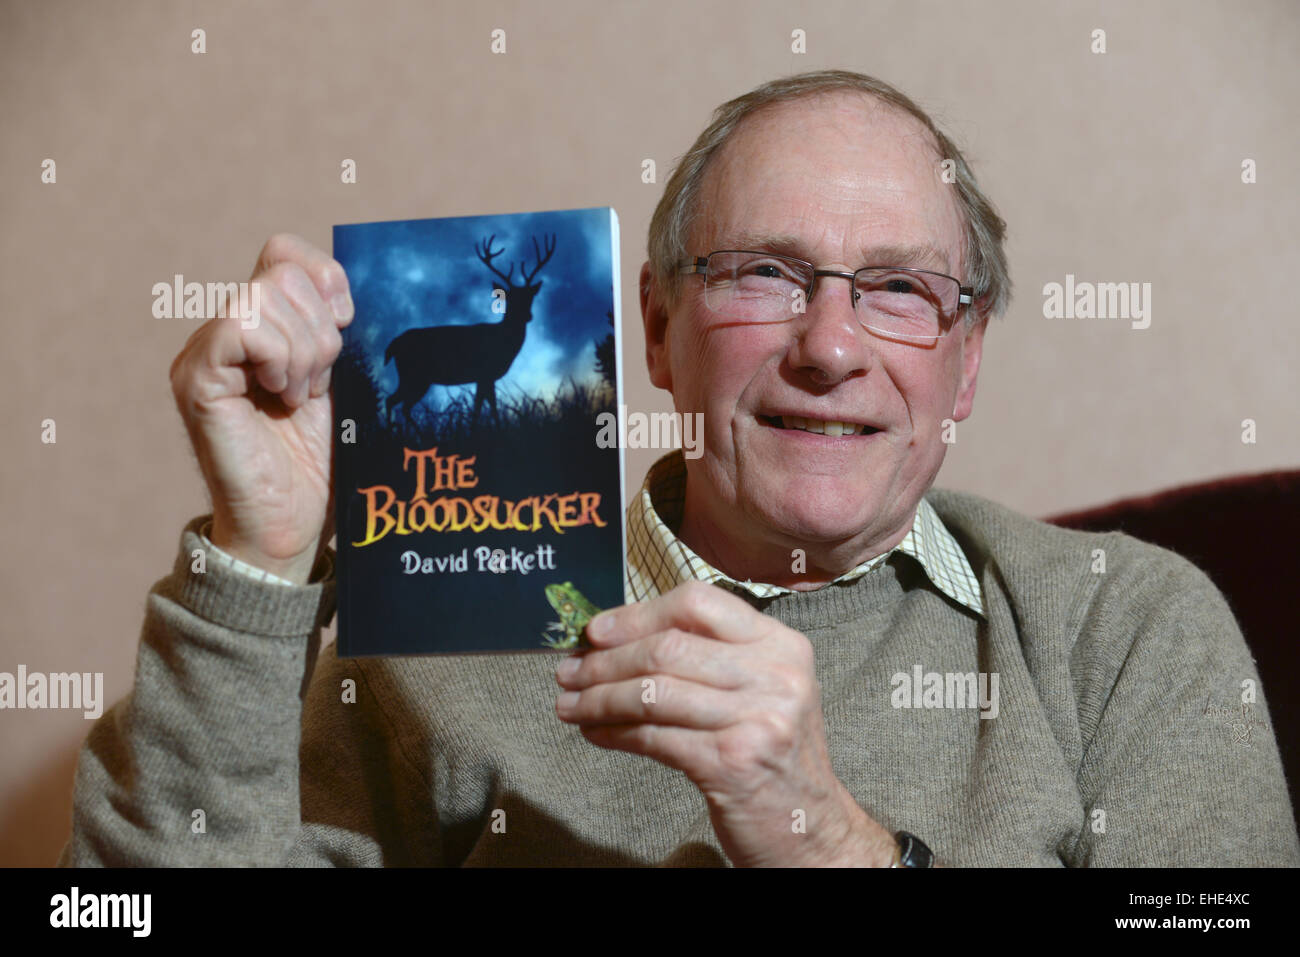 Yorkshire basato l'autore David Peckett con il suo ultimo libro per bambini "Bloodsucker'. Immagine: Scott Bairstow/Alamy Foto Stock